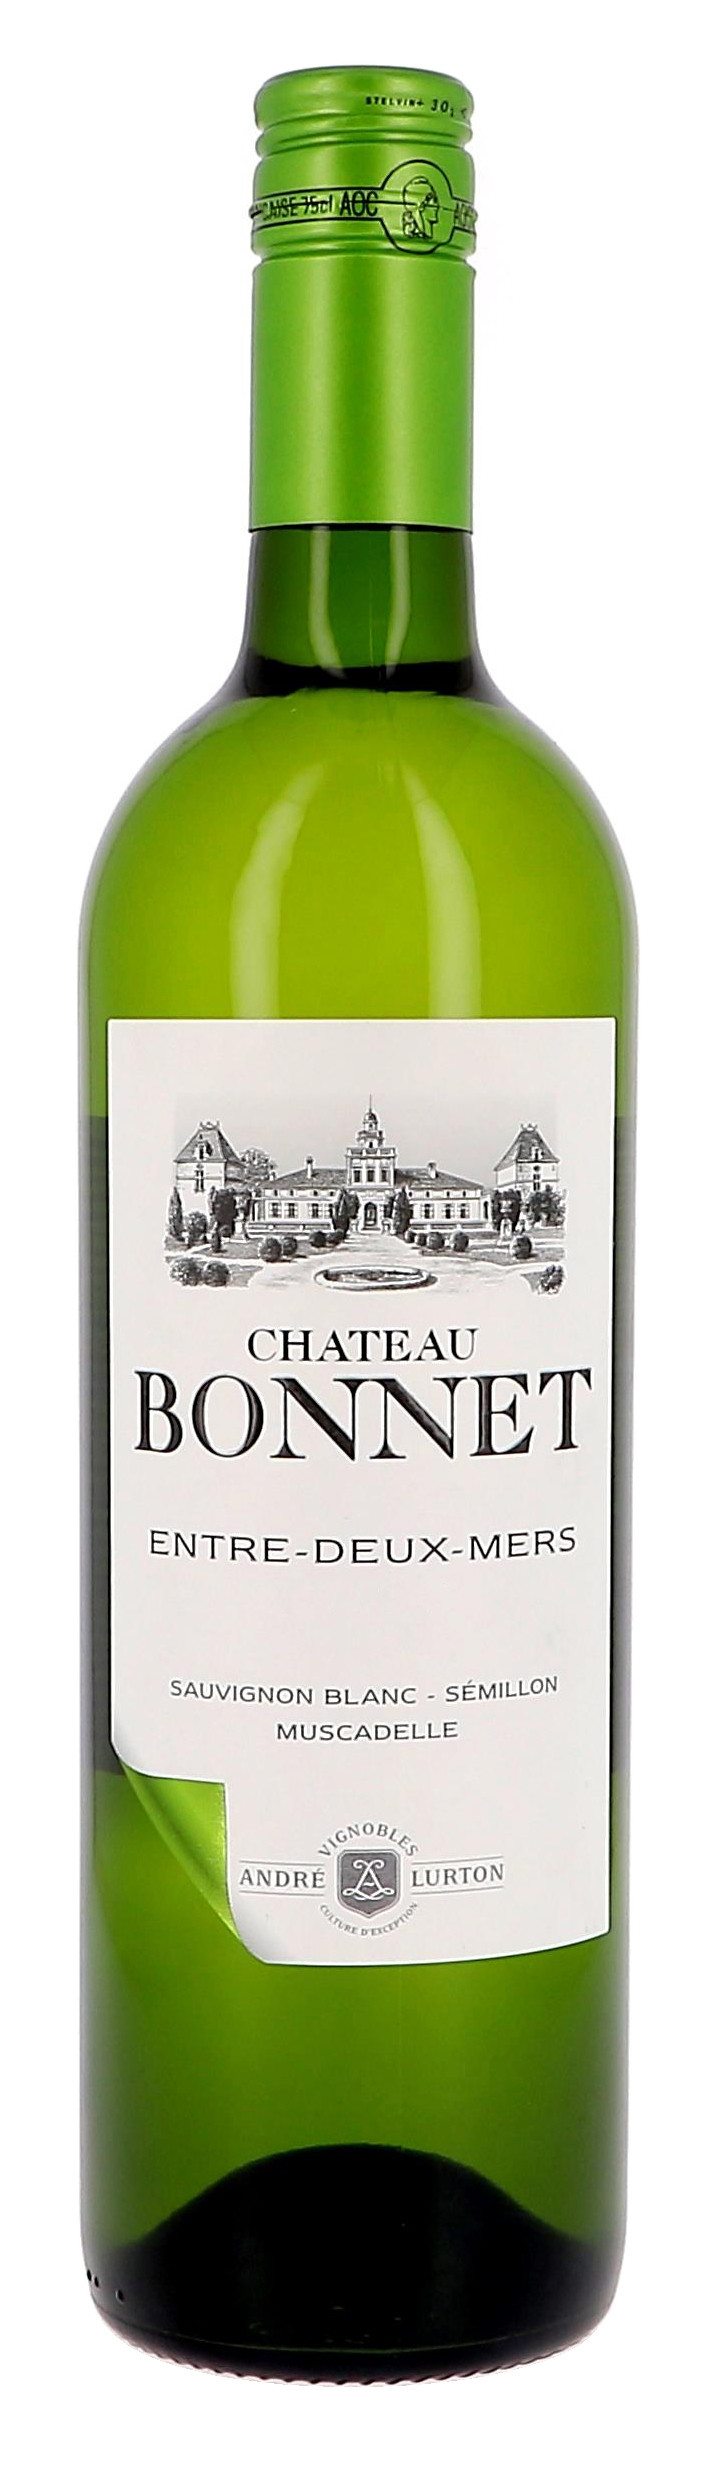 Chateau Bonnet 75cl Entre-Deux-Mers Andre Lurton